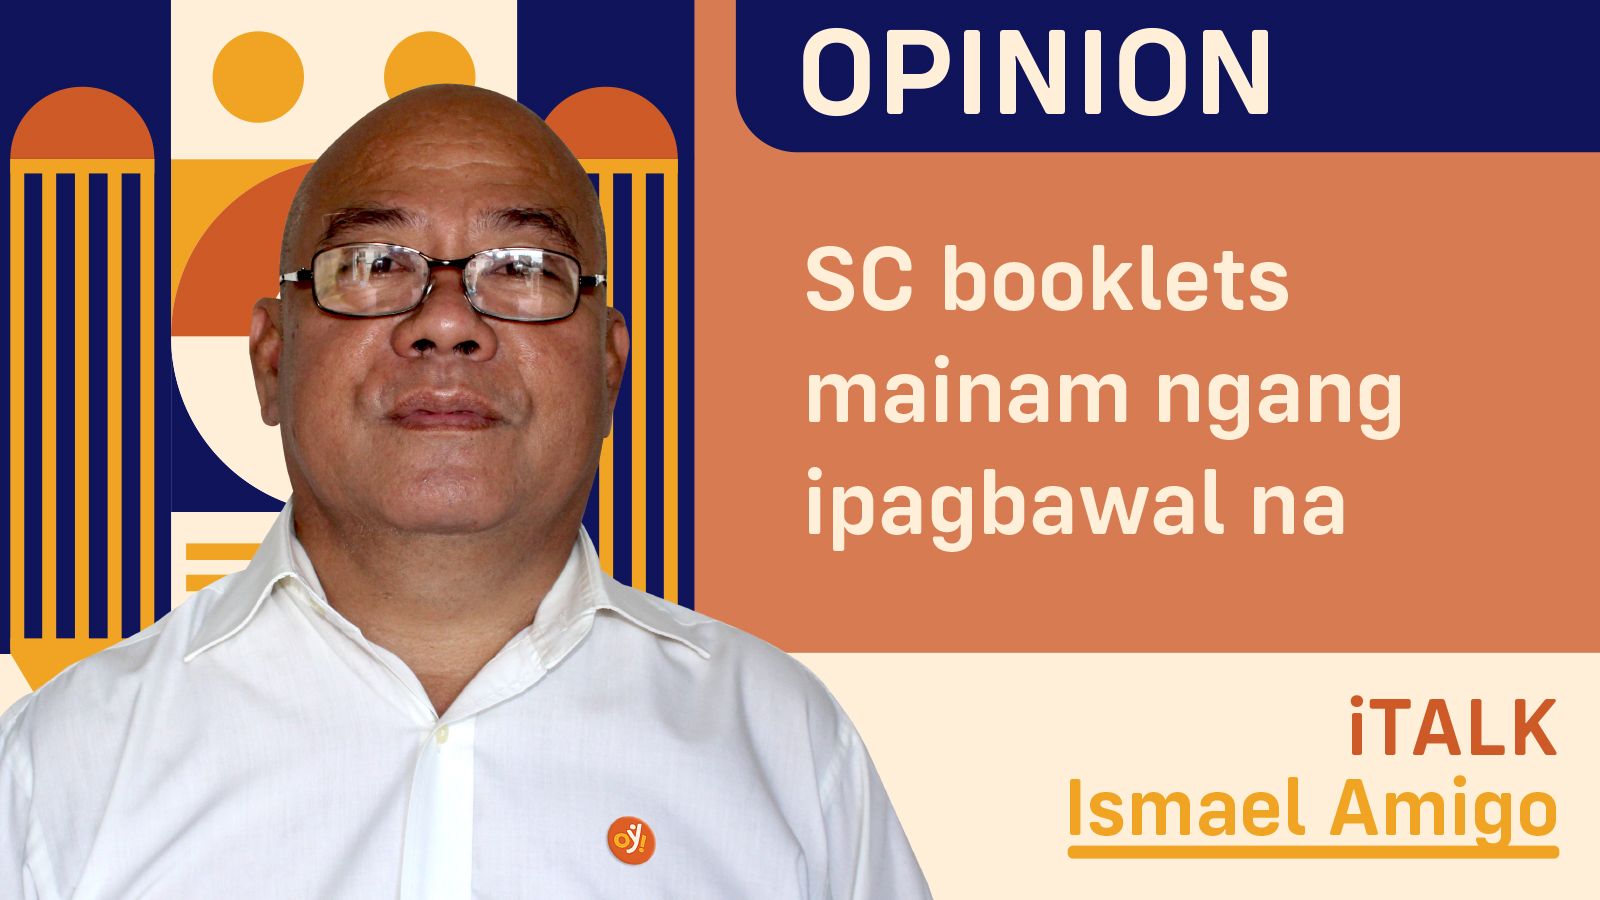 SC booklets mainam ngang ipagbawal na